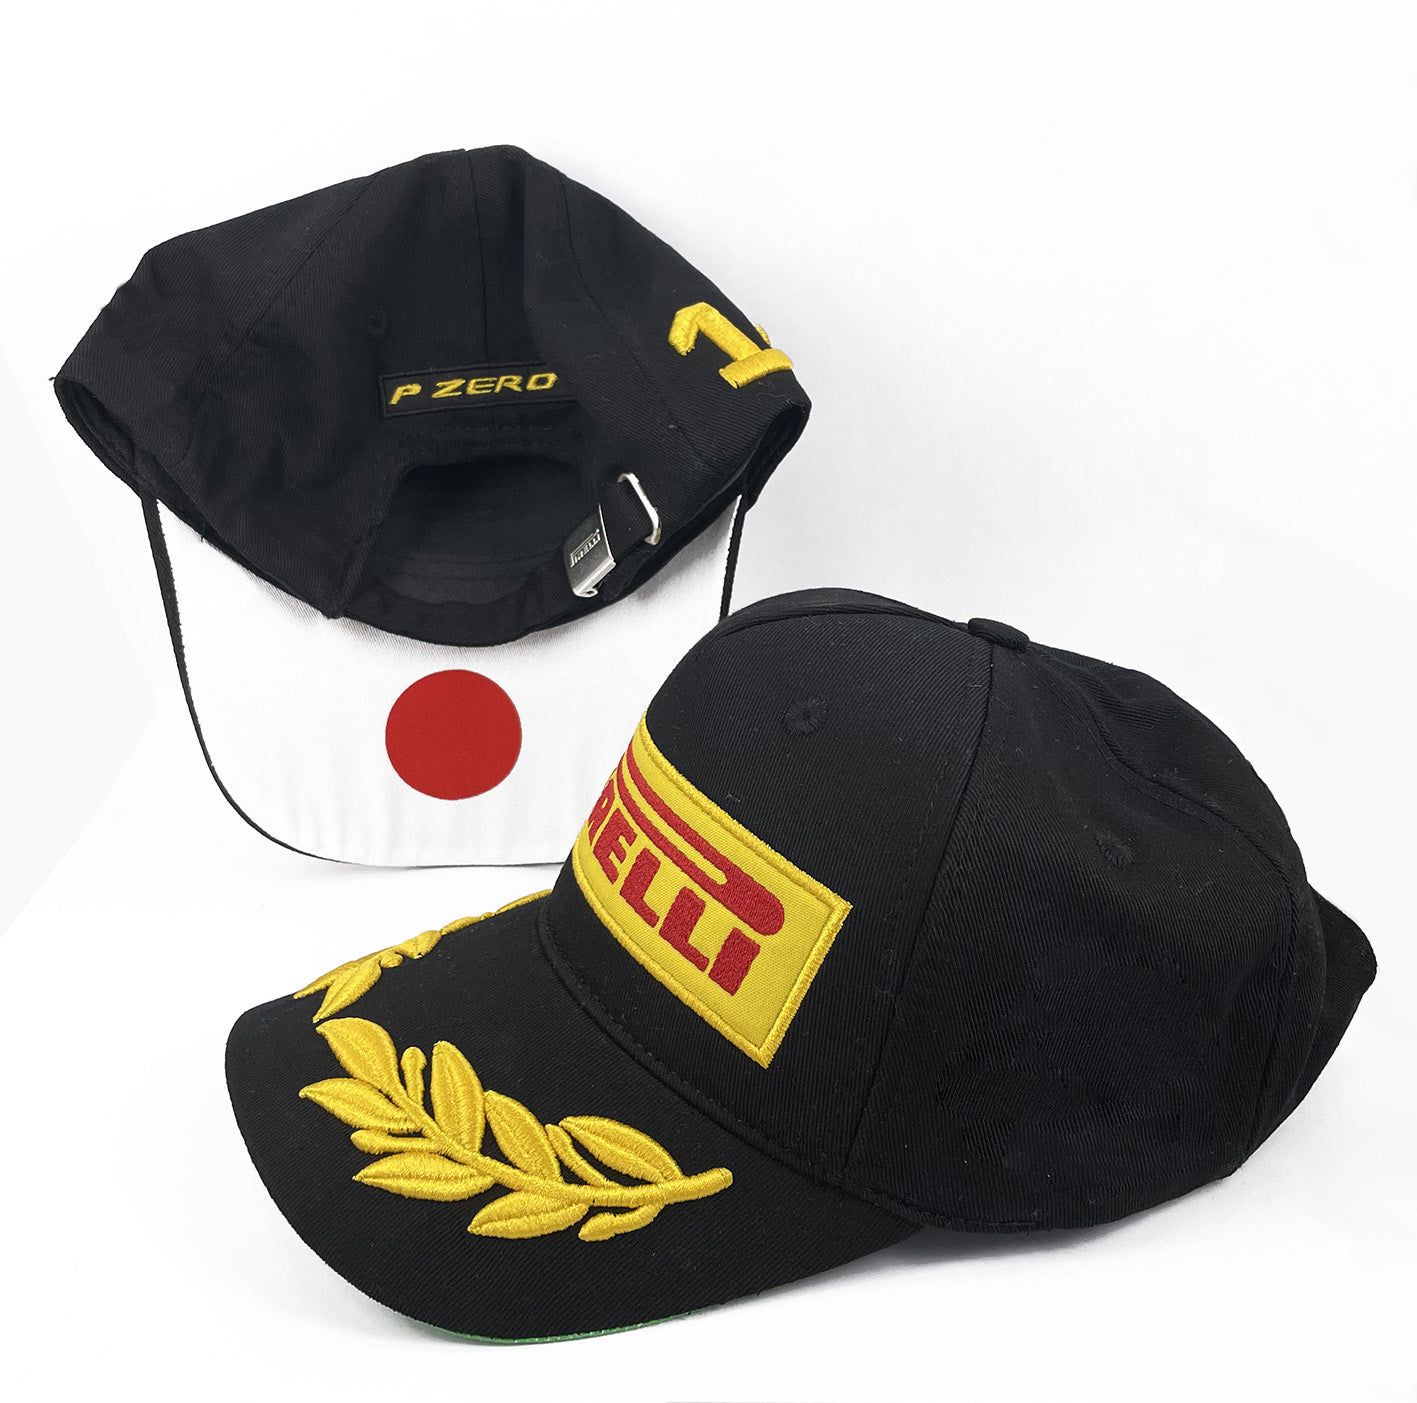 Pirelli Podium Japan Cap